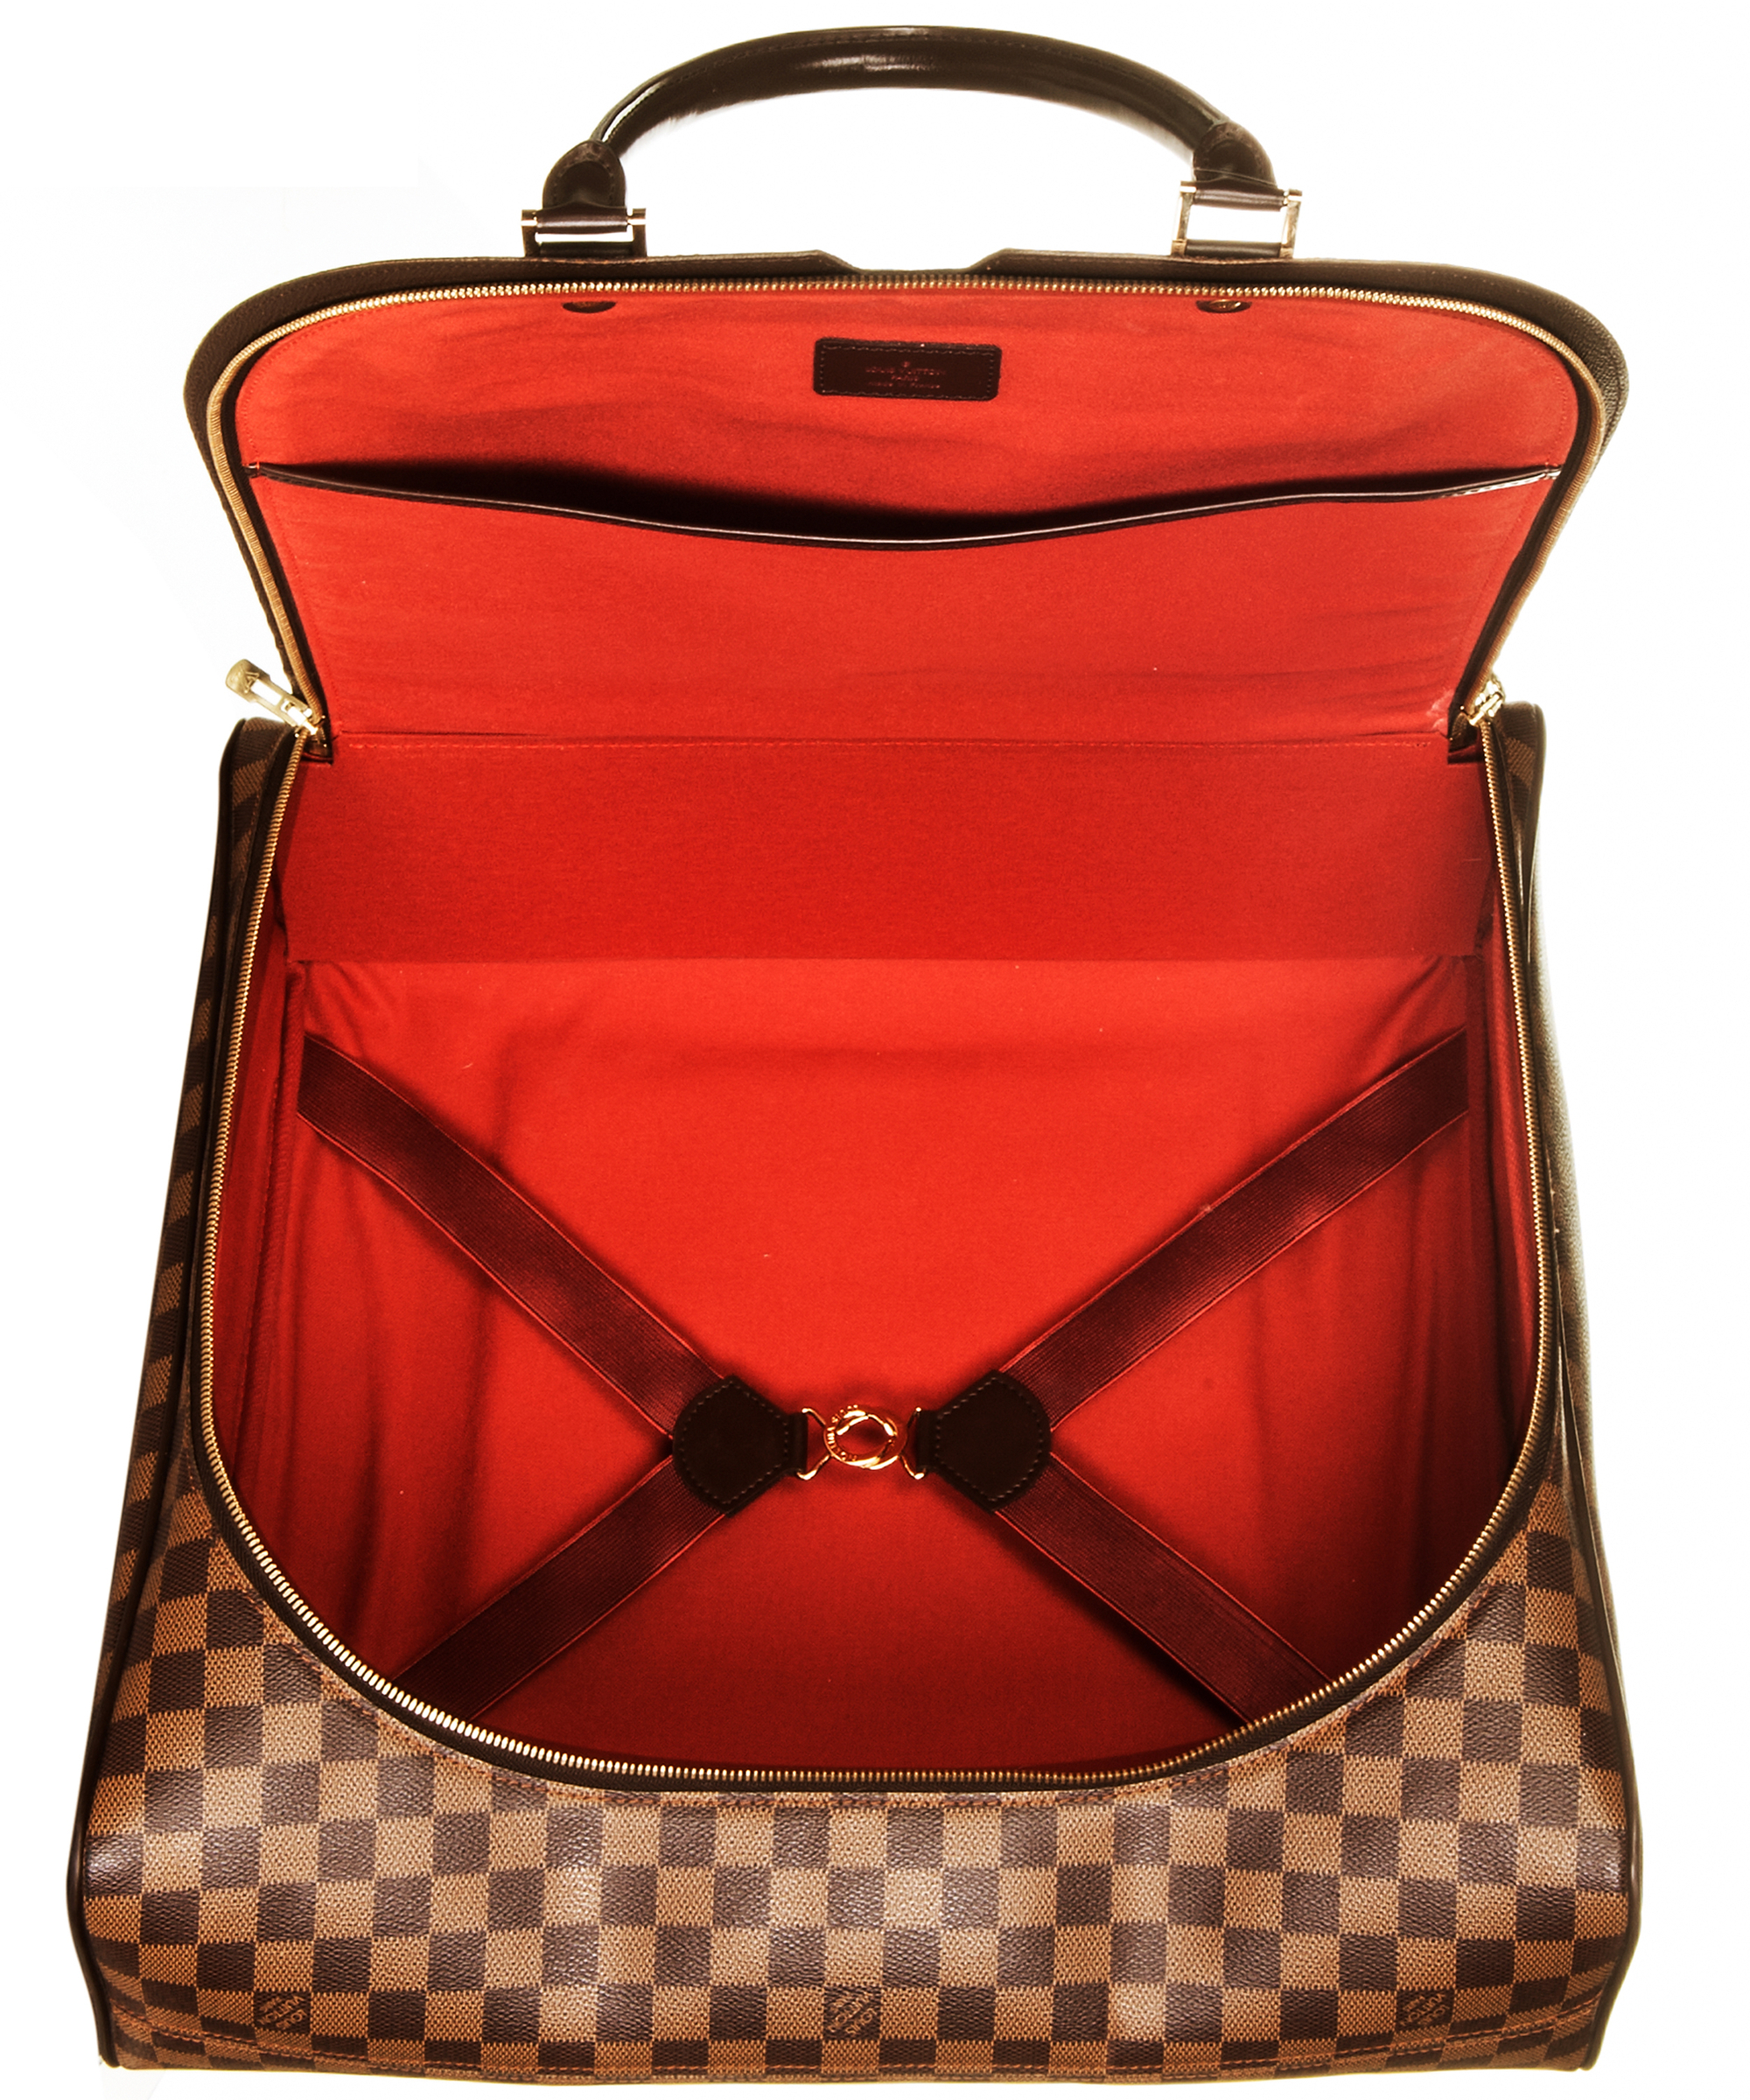 LOUIS VUITTON Damier Ebene Nolita PM Weekender Travel Bag Suitcase